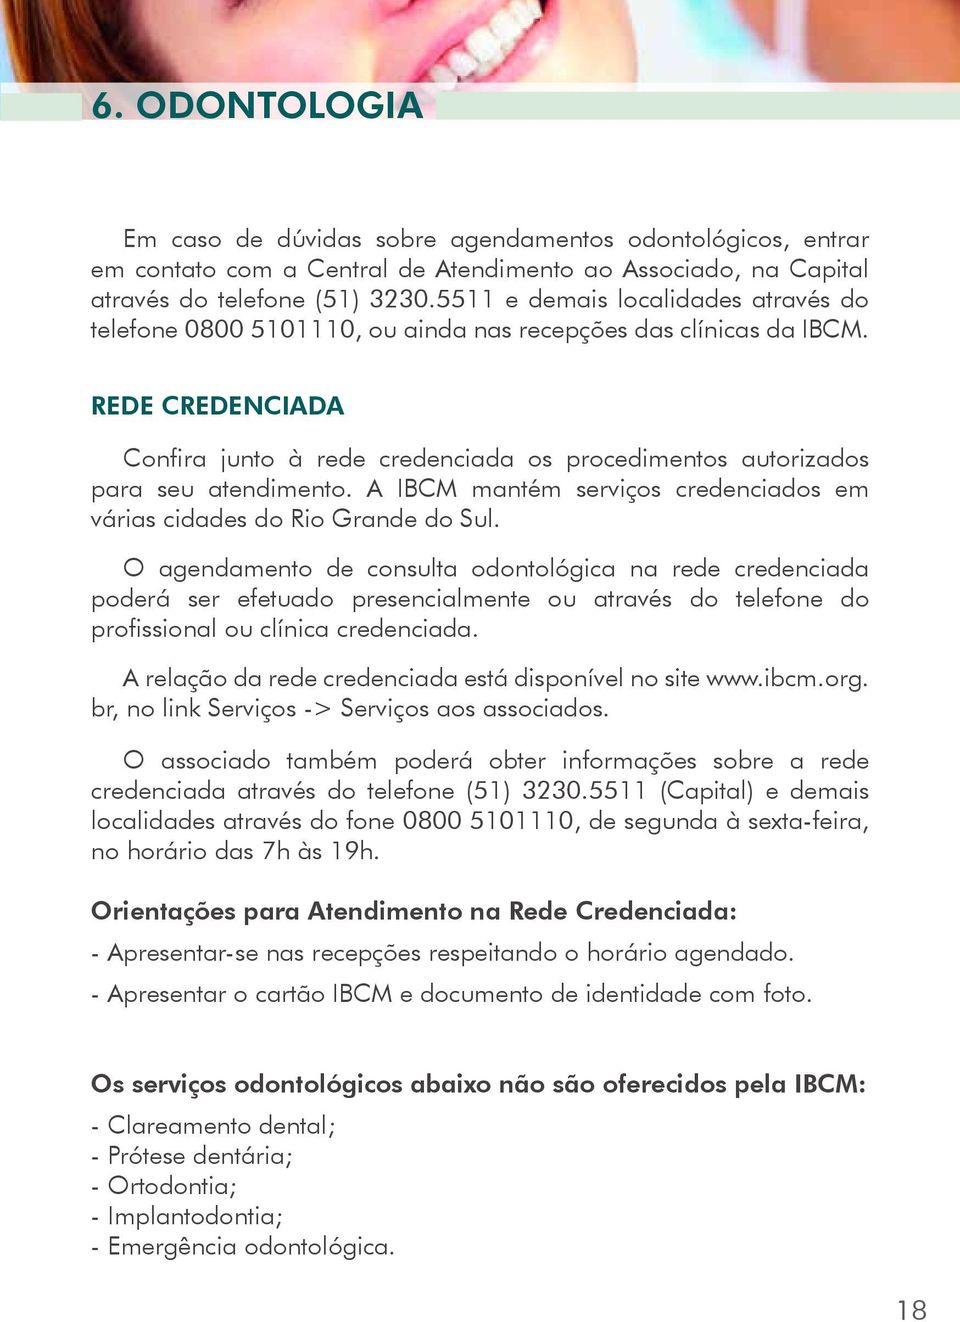 REDE CREDENCIADA Confira junto à rede credenciada os procedimentos autorizados para seu atendimento. A IBCM mantém serviços credenciados em várias cidades do Rio Grande do Sul.